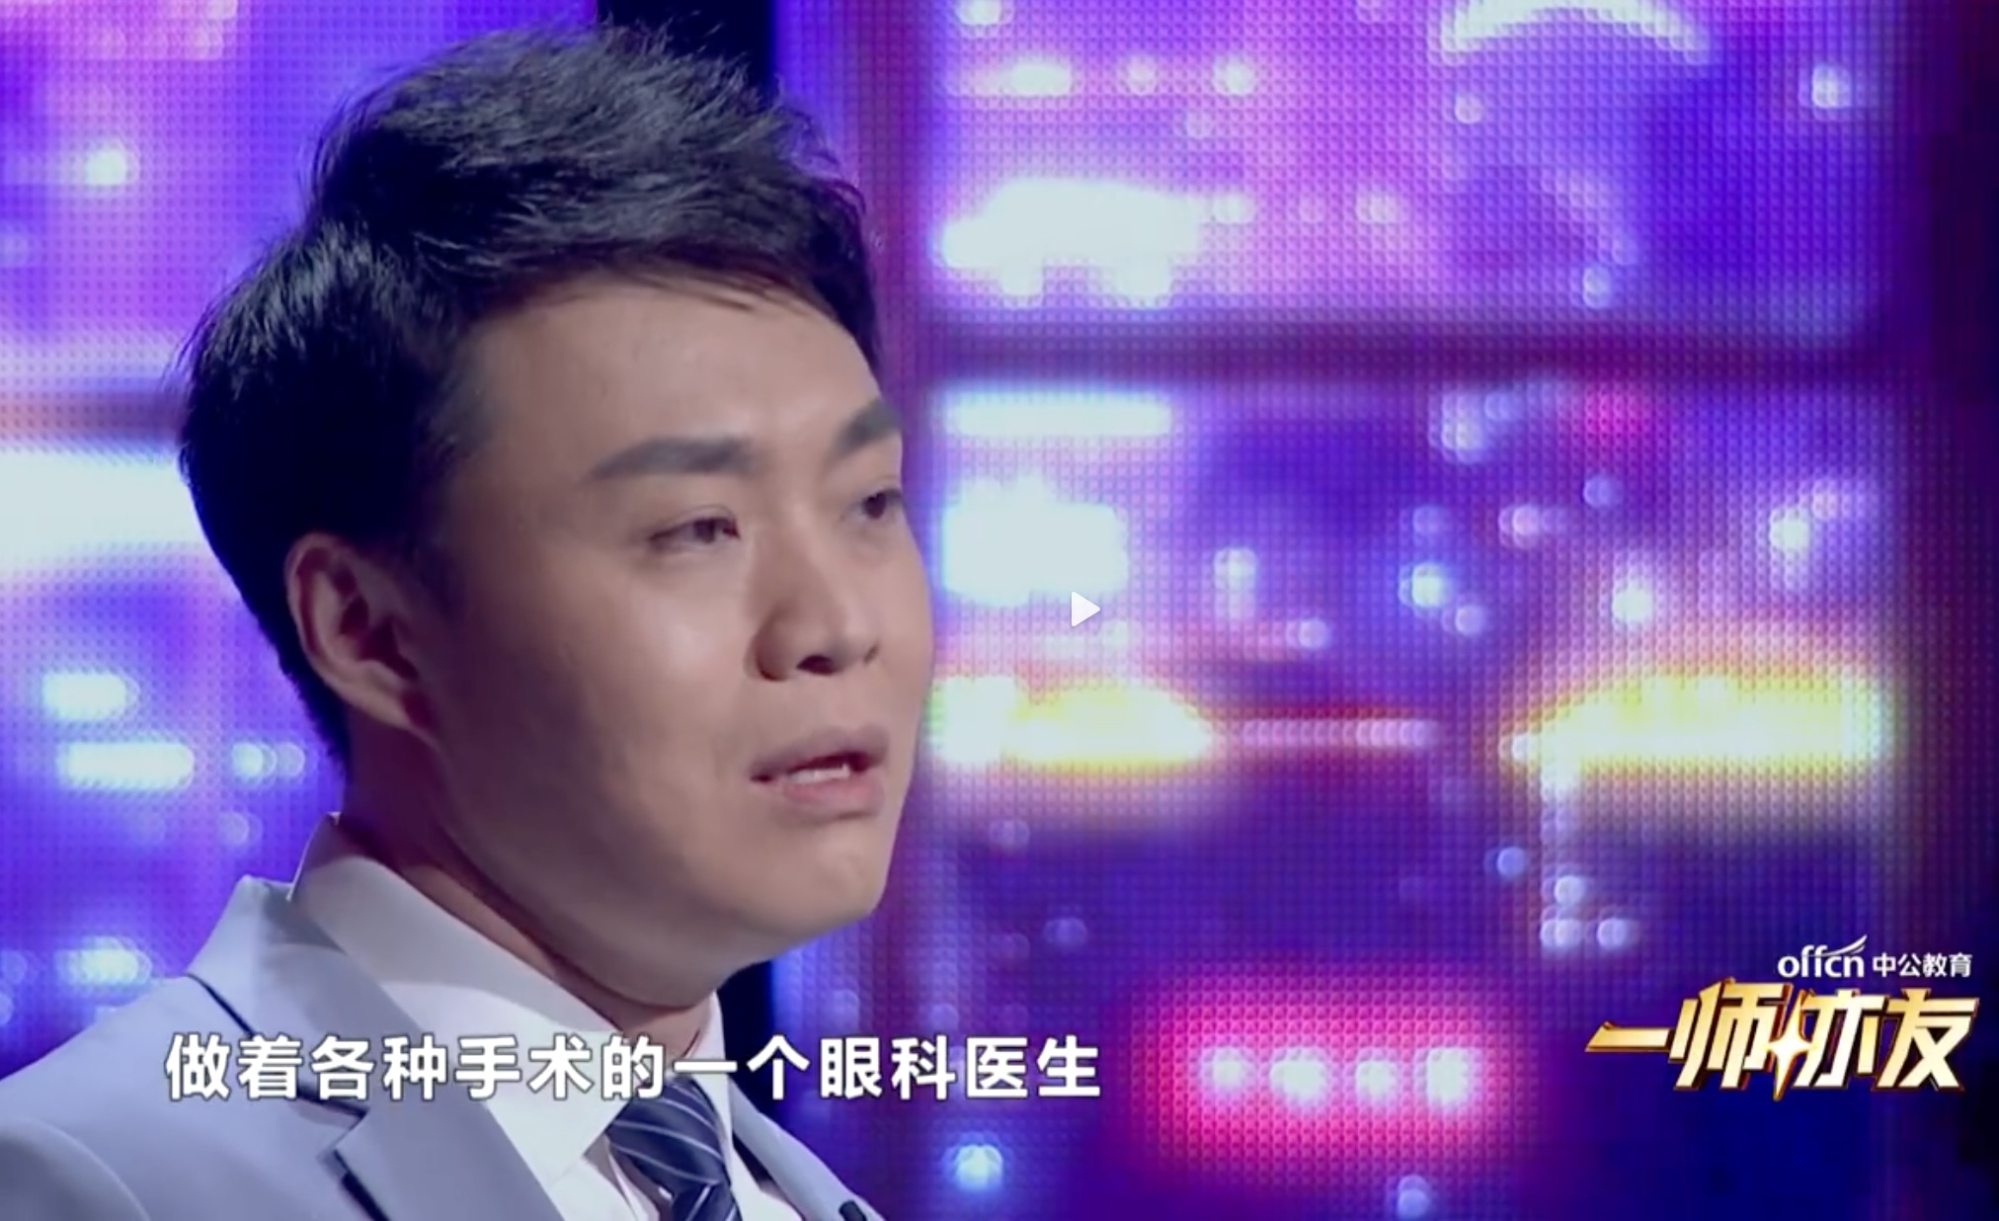 تاو یونگ نے آپریٹنگ تھیٹر میں واپس آنے کے لئے بہت سے چیلنجوں پر قابو پایا ہے۔ فوٹو: ویبو